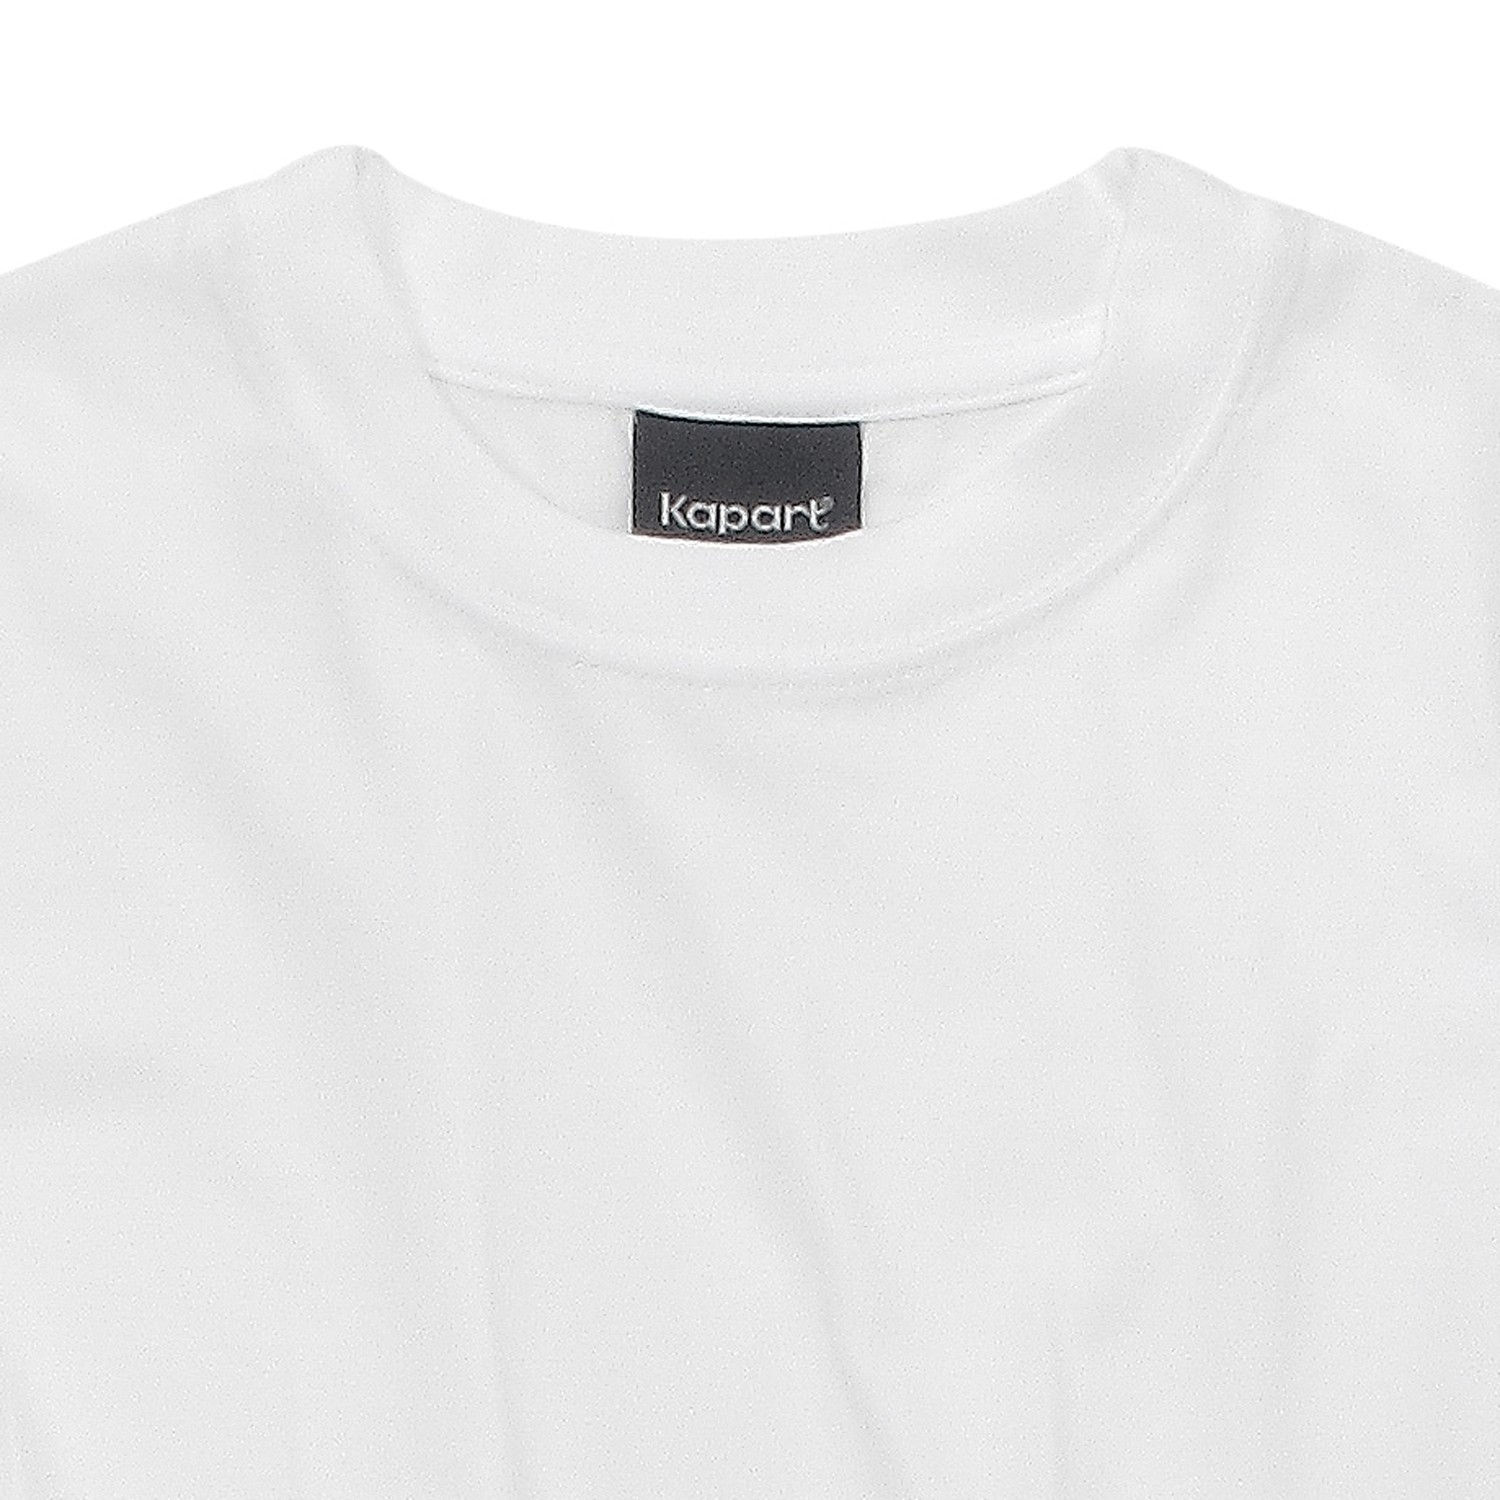 T-shirt blanc 100% coton de Kapart grandes tailles jusqu'au 8XL